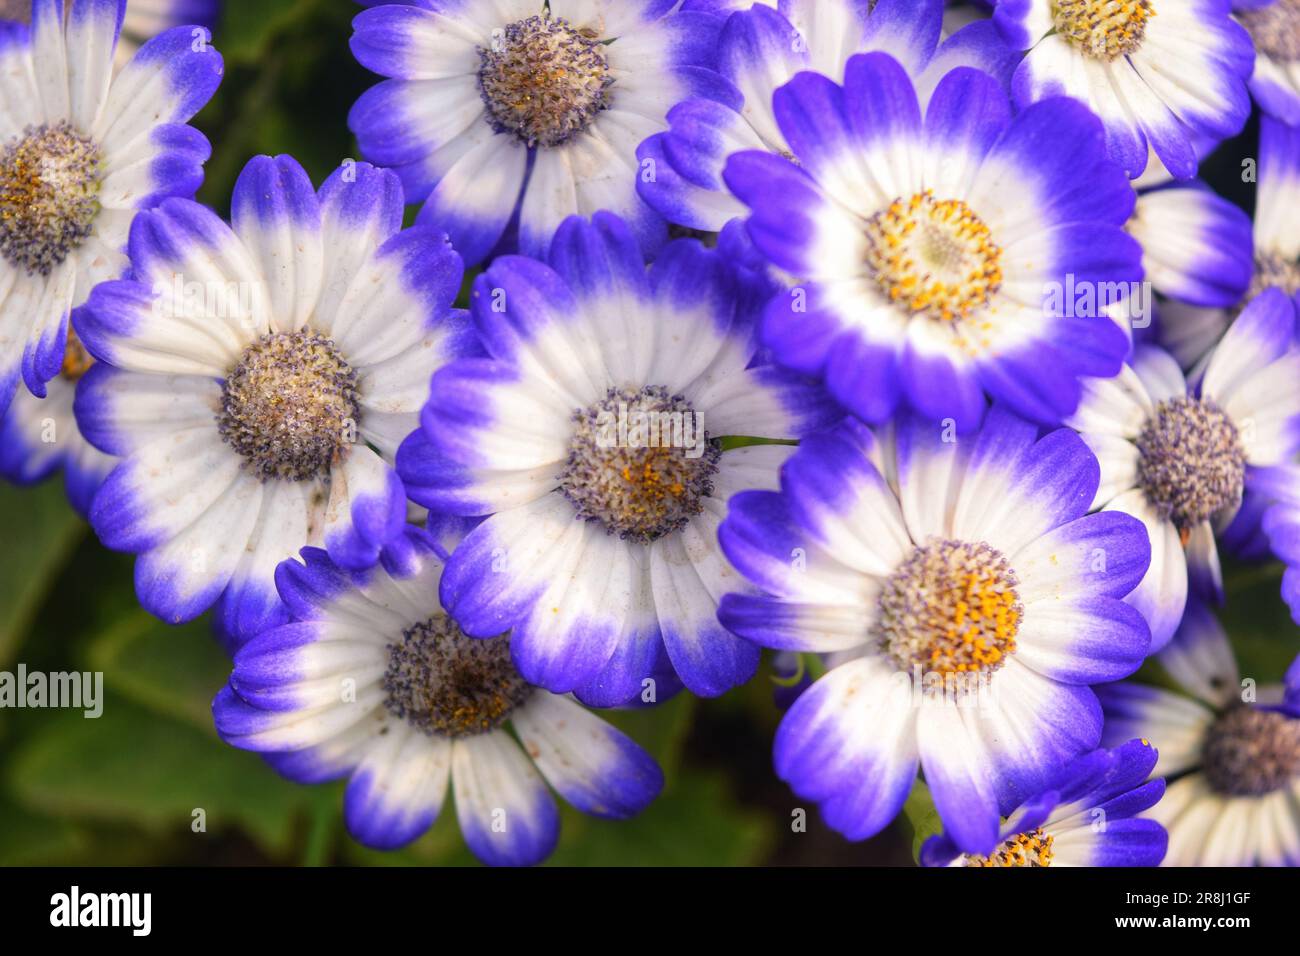 Giardino fiorente con fiori diversi, colori vivaci e forme accattivanti sotto un'incantevole luce ombra Foto Stock